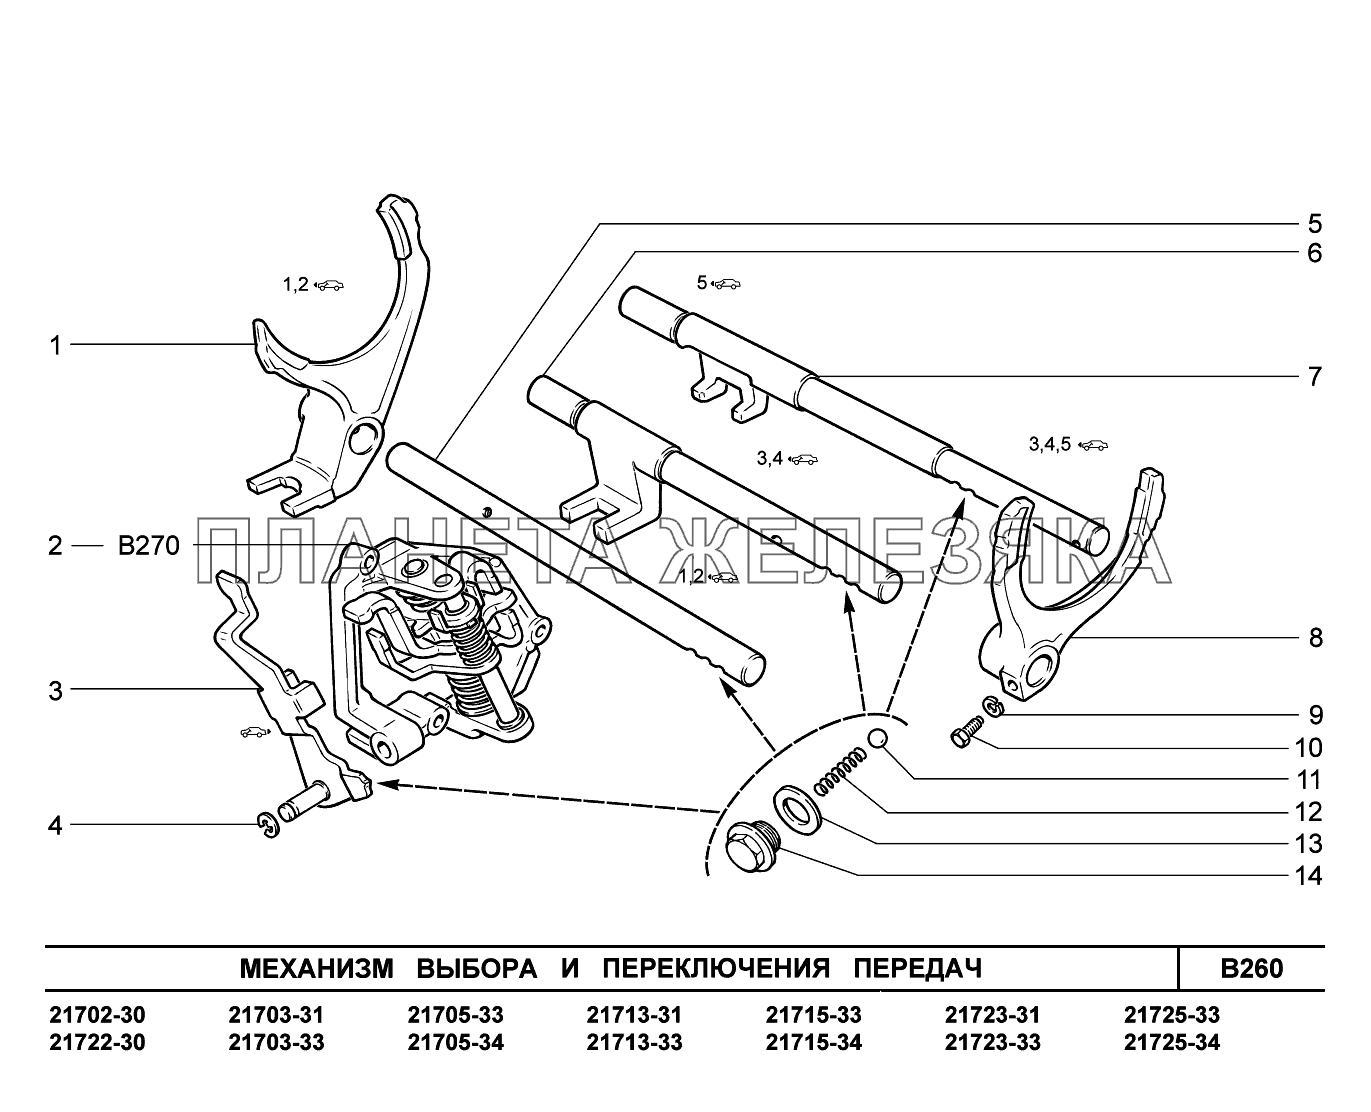 B260. Механизм выбора и переключения передач ВАЗ-2170 